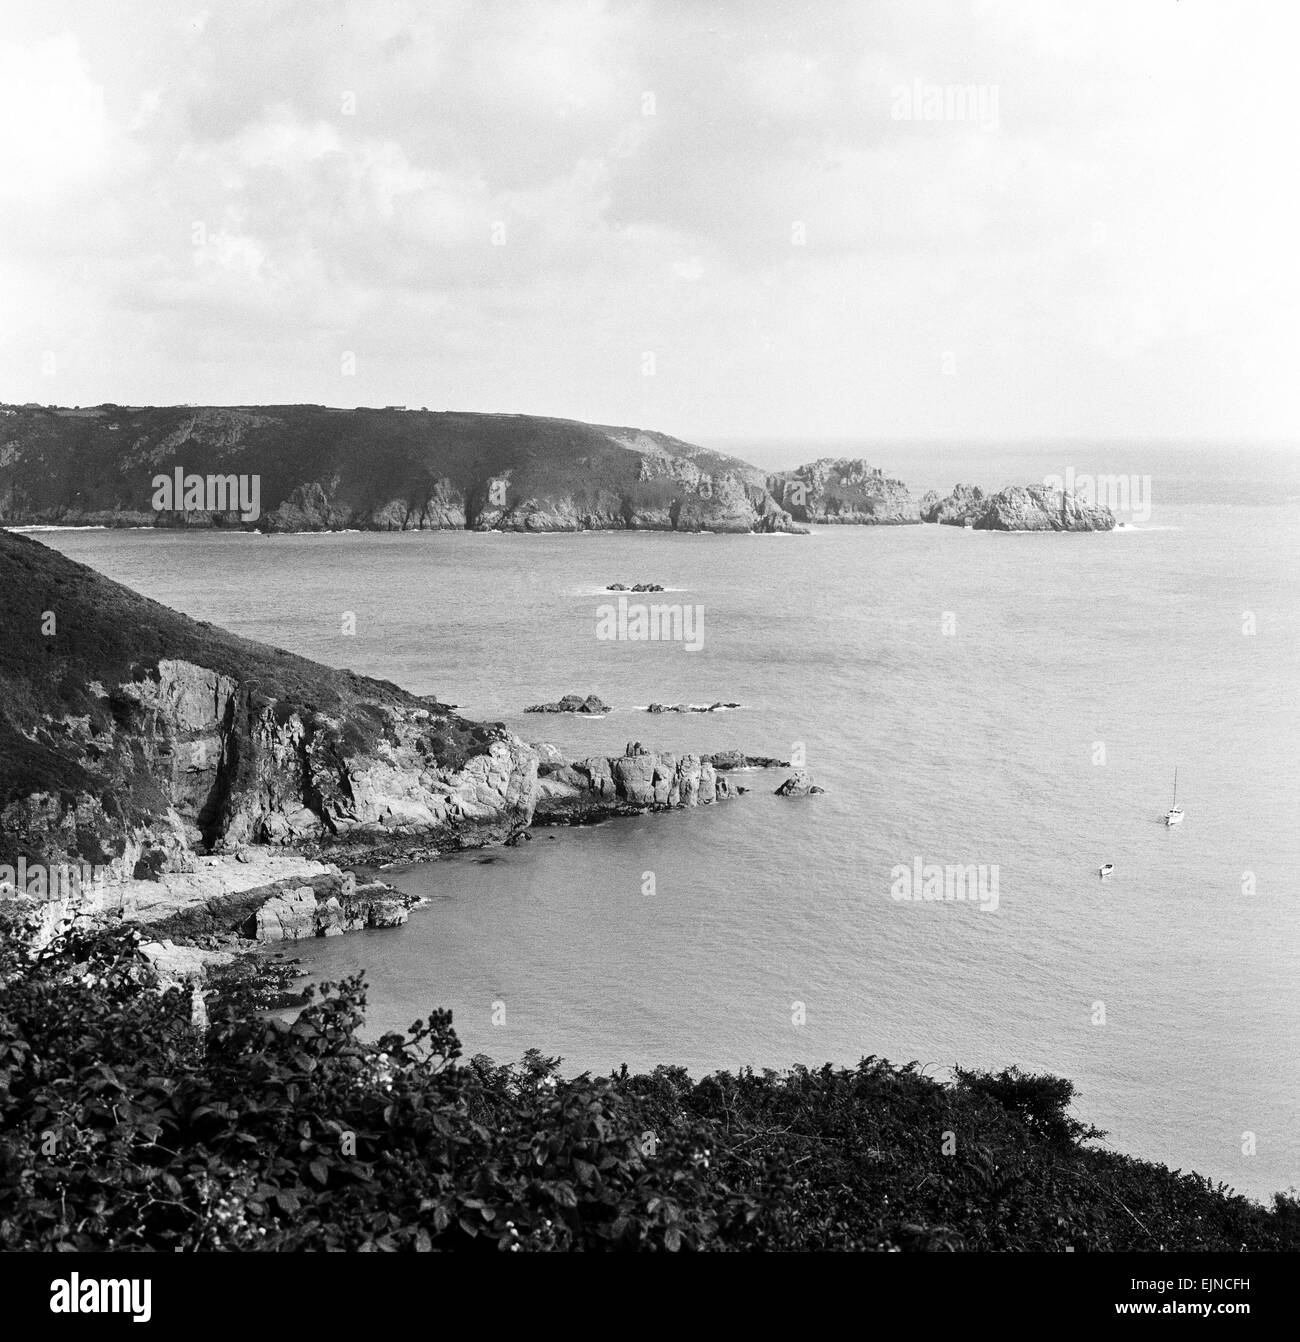 Vue de Moulin Huet Bay et Jerbourg Point sur l'île de Guernsey, Channel Islands. Septembre 1965. Banque D'Images